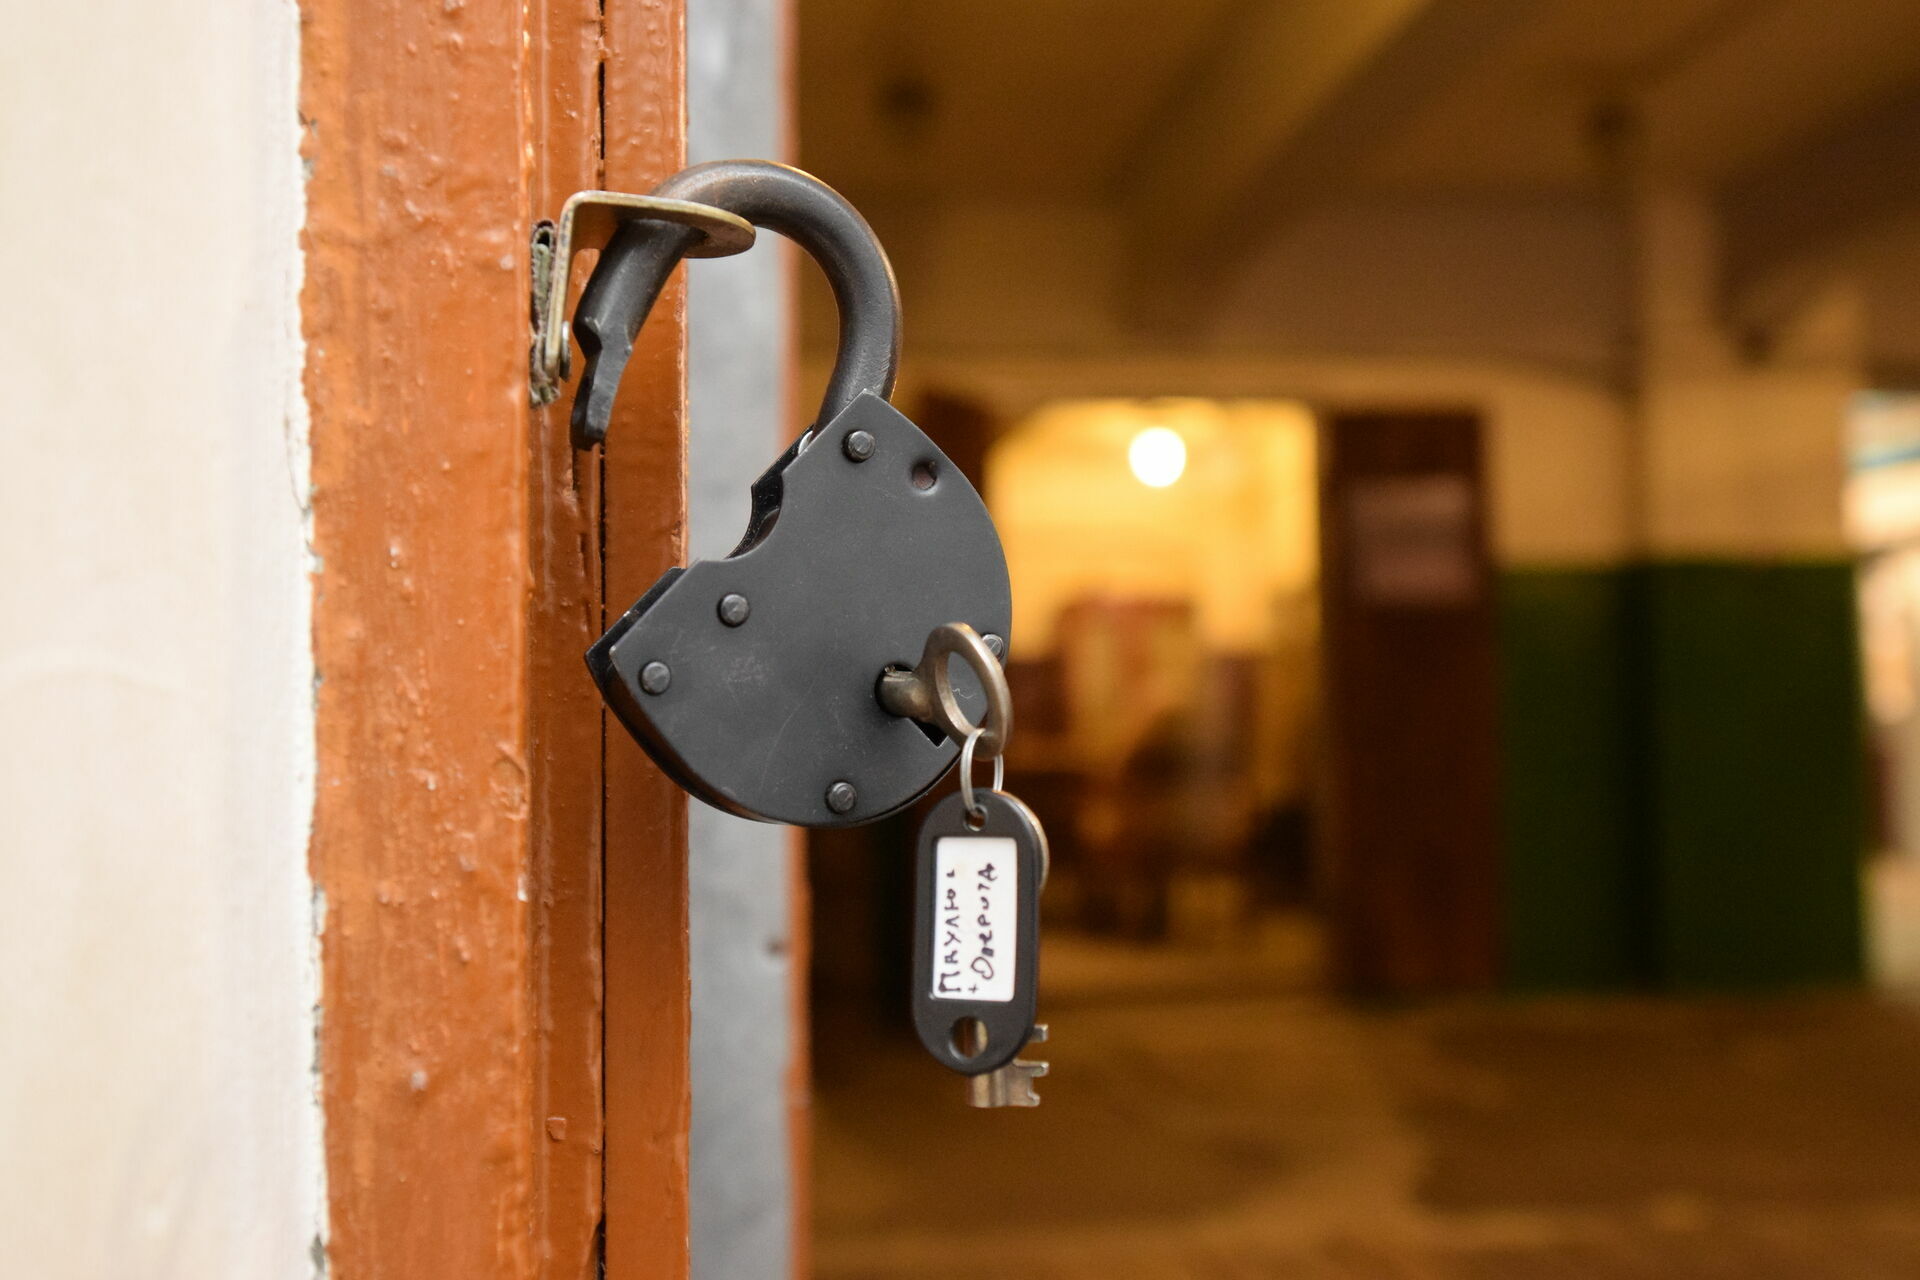 Продуктовый магазин в Карелии закрыли из-за частых краж